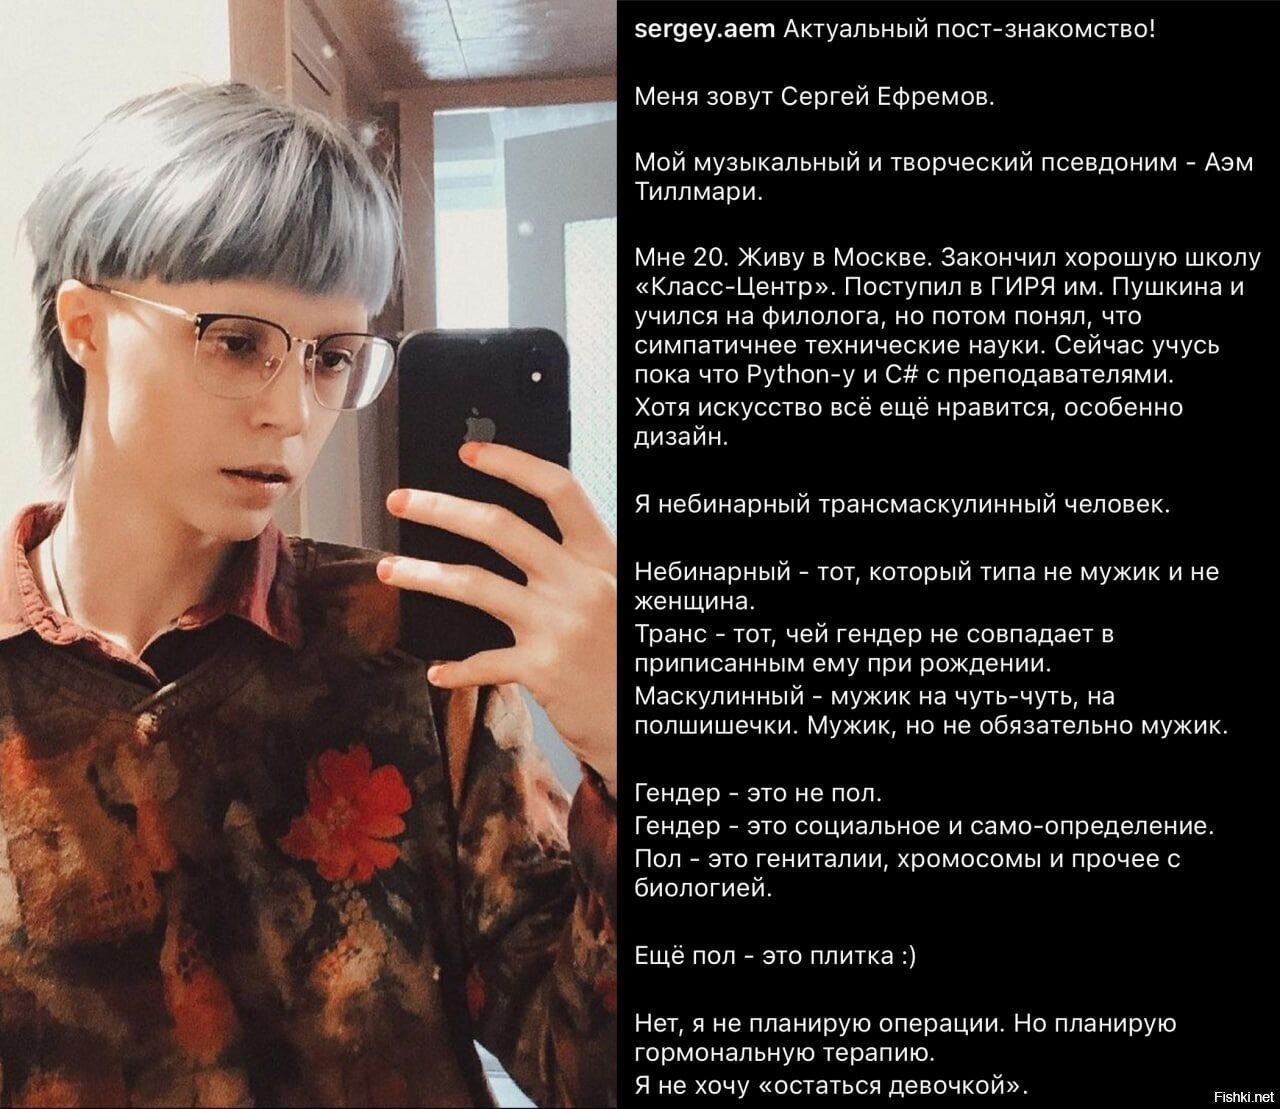 дочь Михаила Ефремова объявила, что она теперь Сергей и вскоре планирует нача...